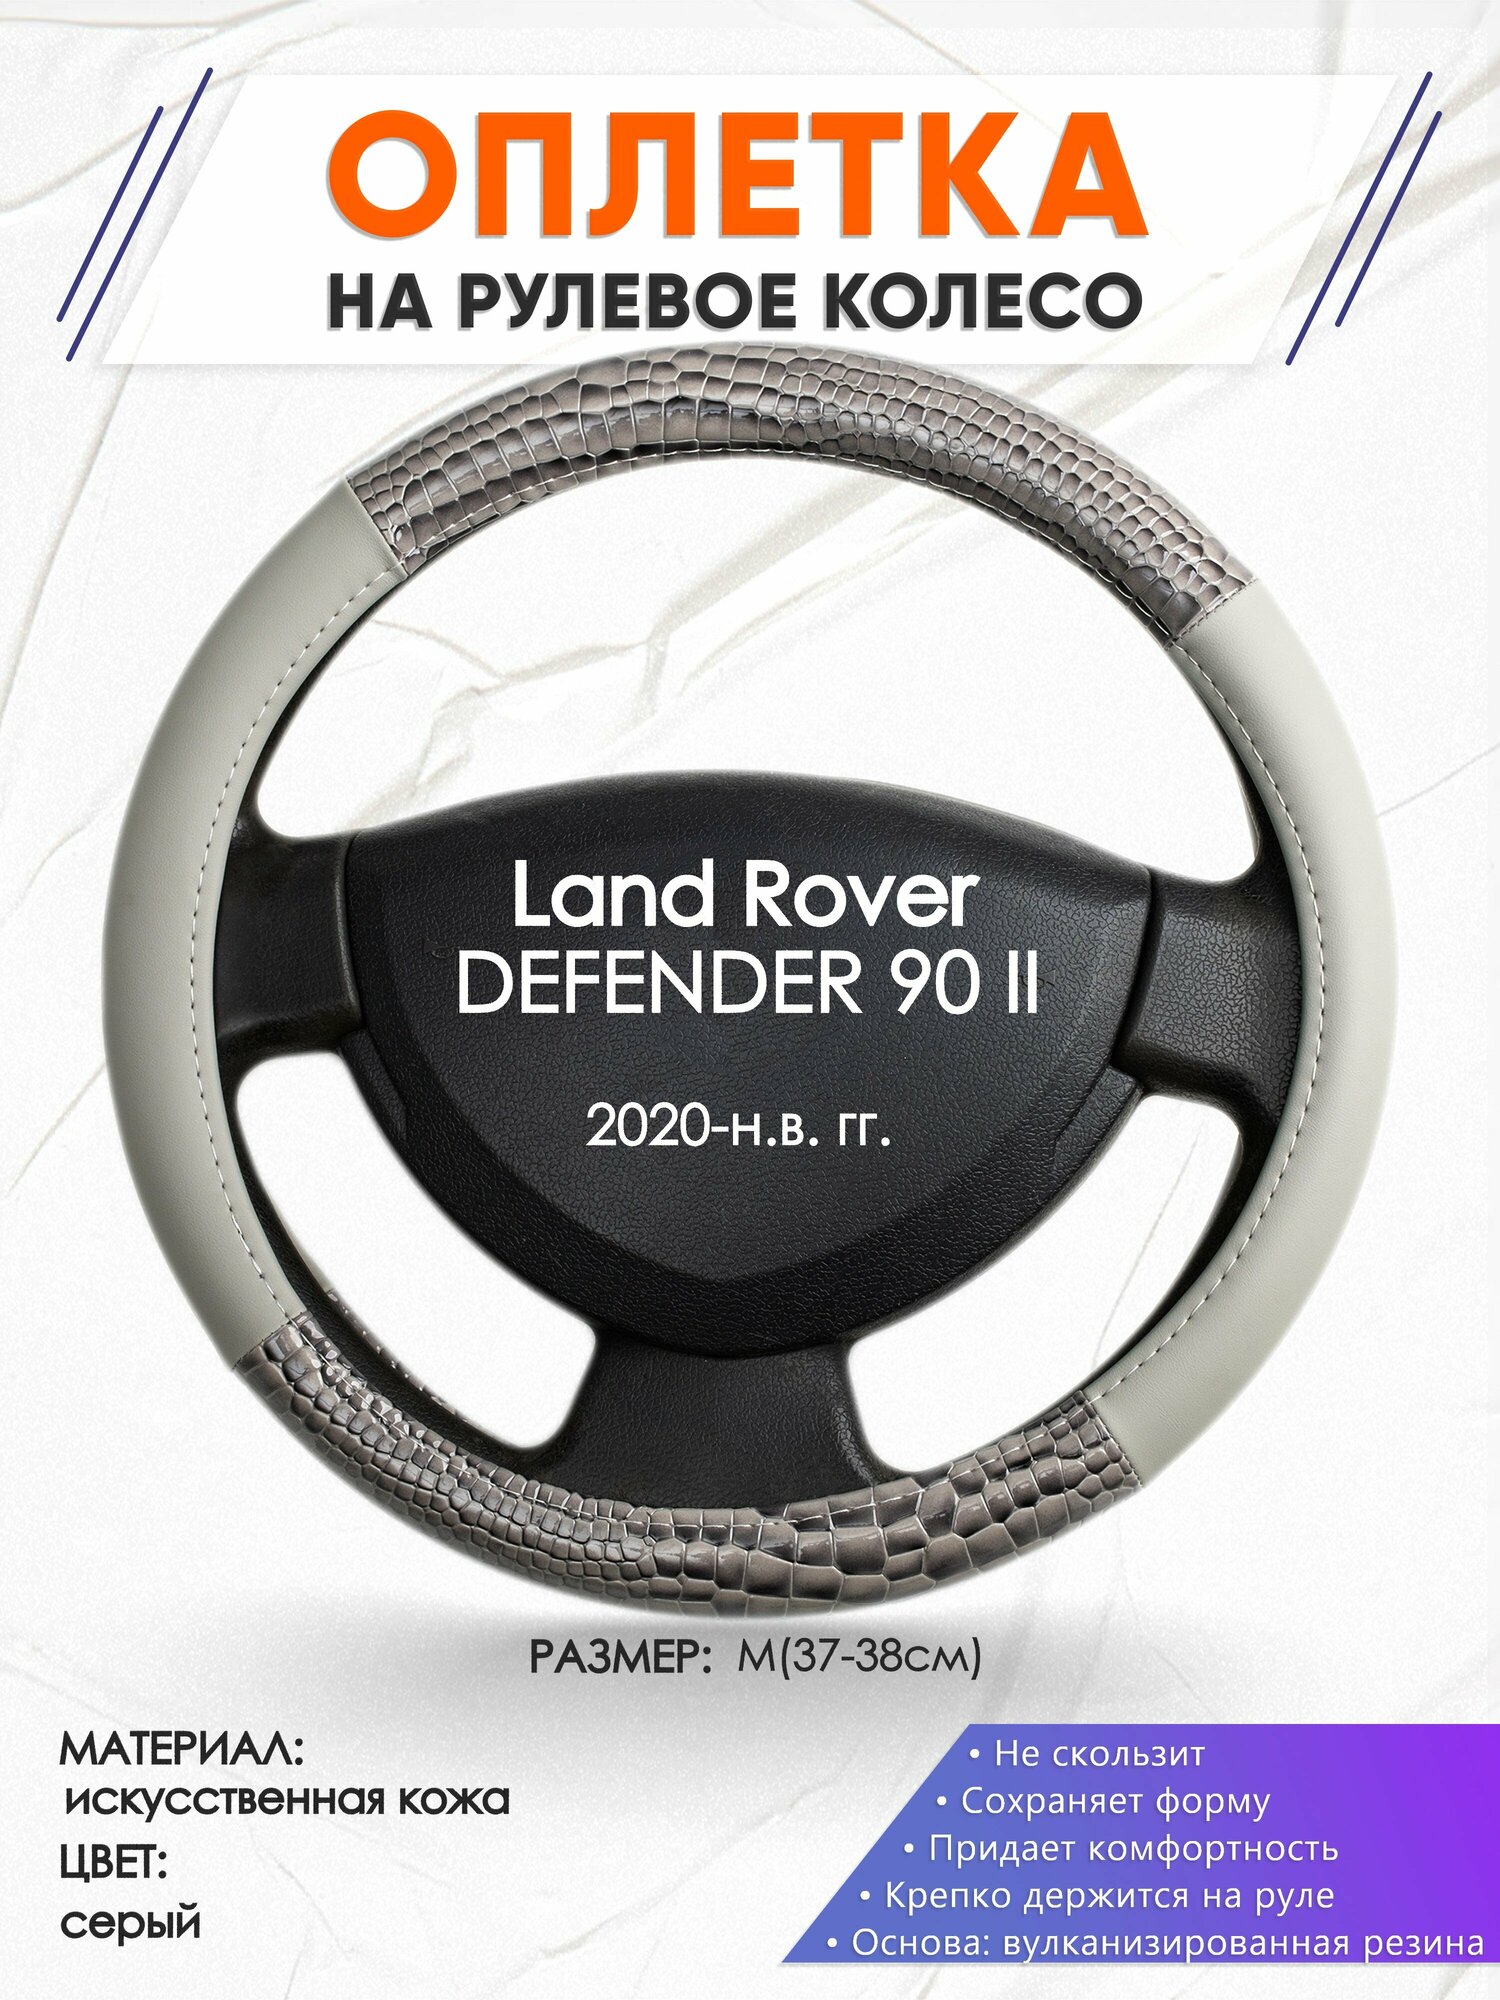 Оплетка наруль для Land Rover DEFENDER 90 2(Ленд Ровер Дефендер 90) 2020-н. в. годов выпуска, размер M(37-38см), Искусственная кожа 84